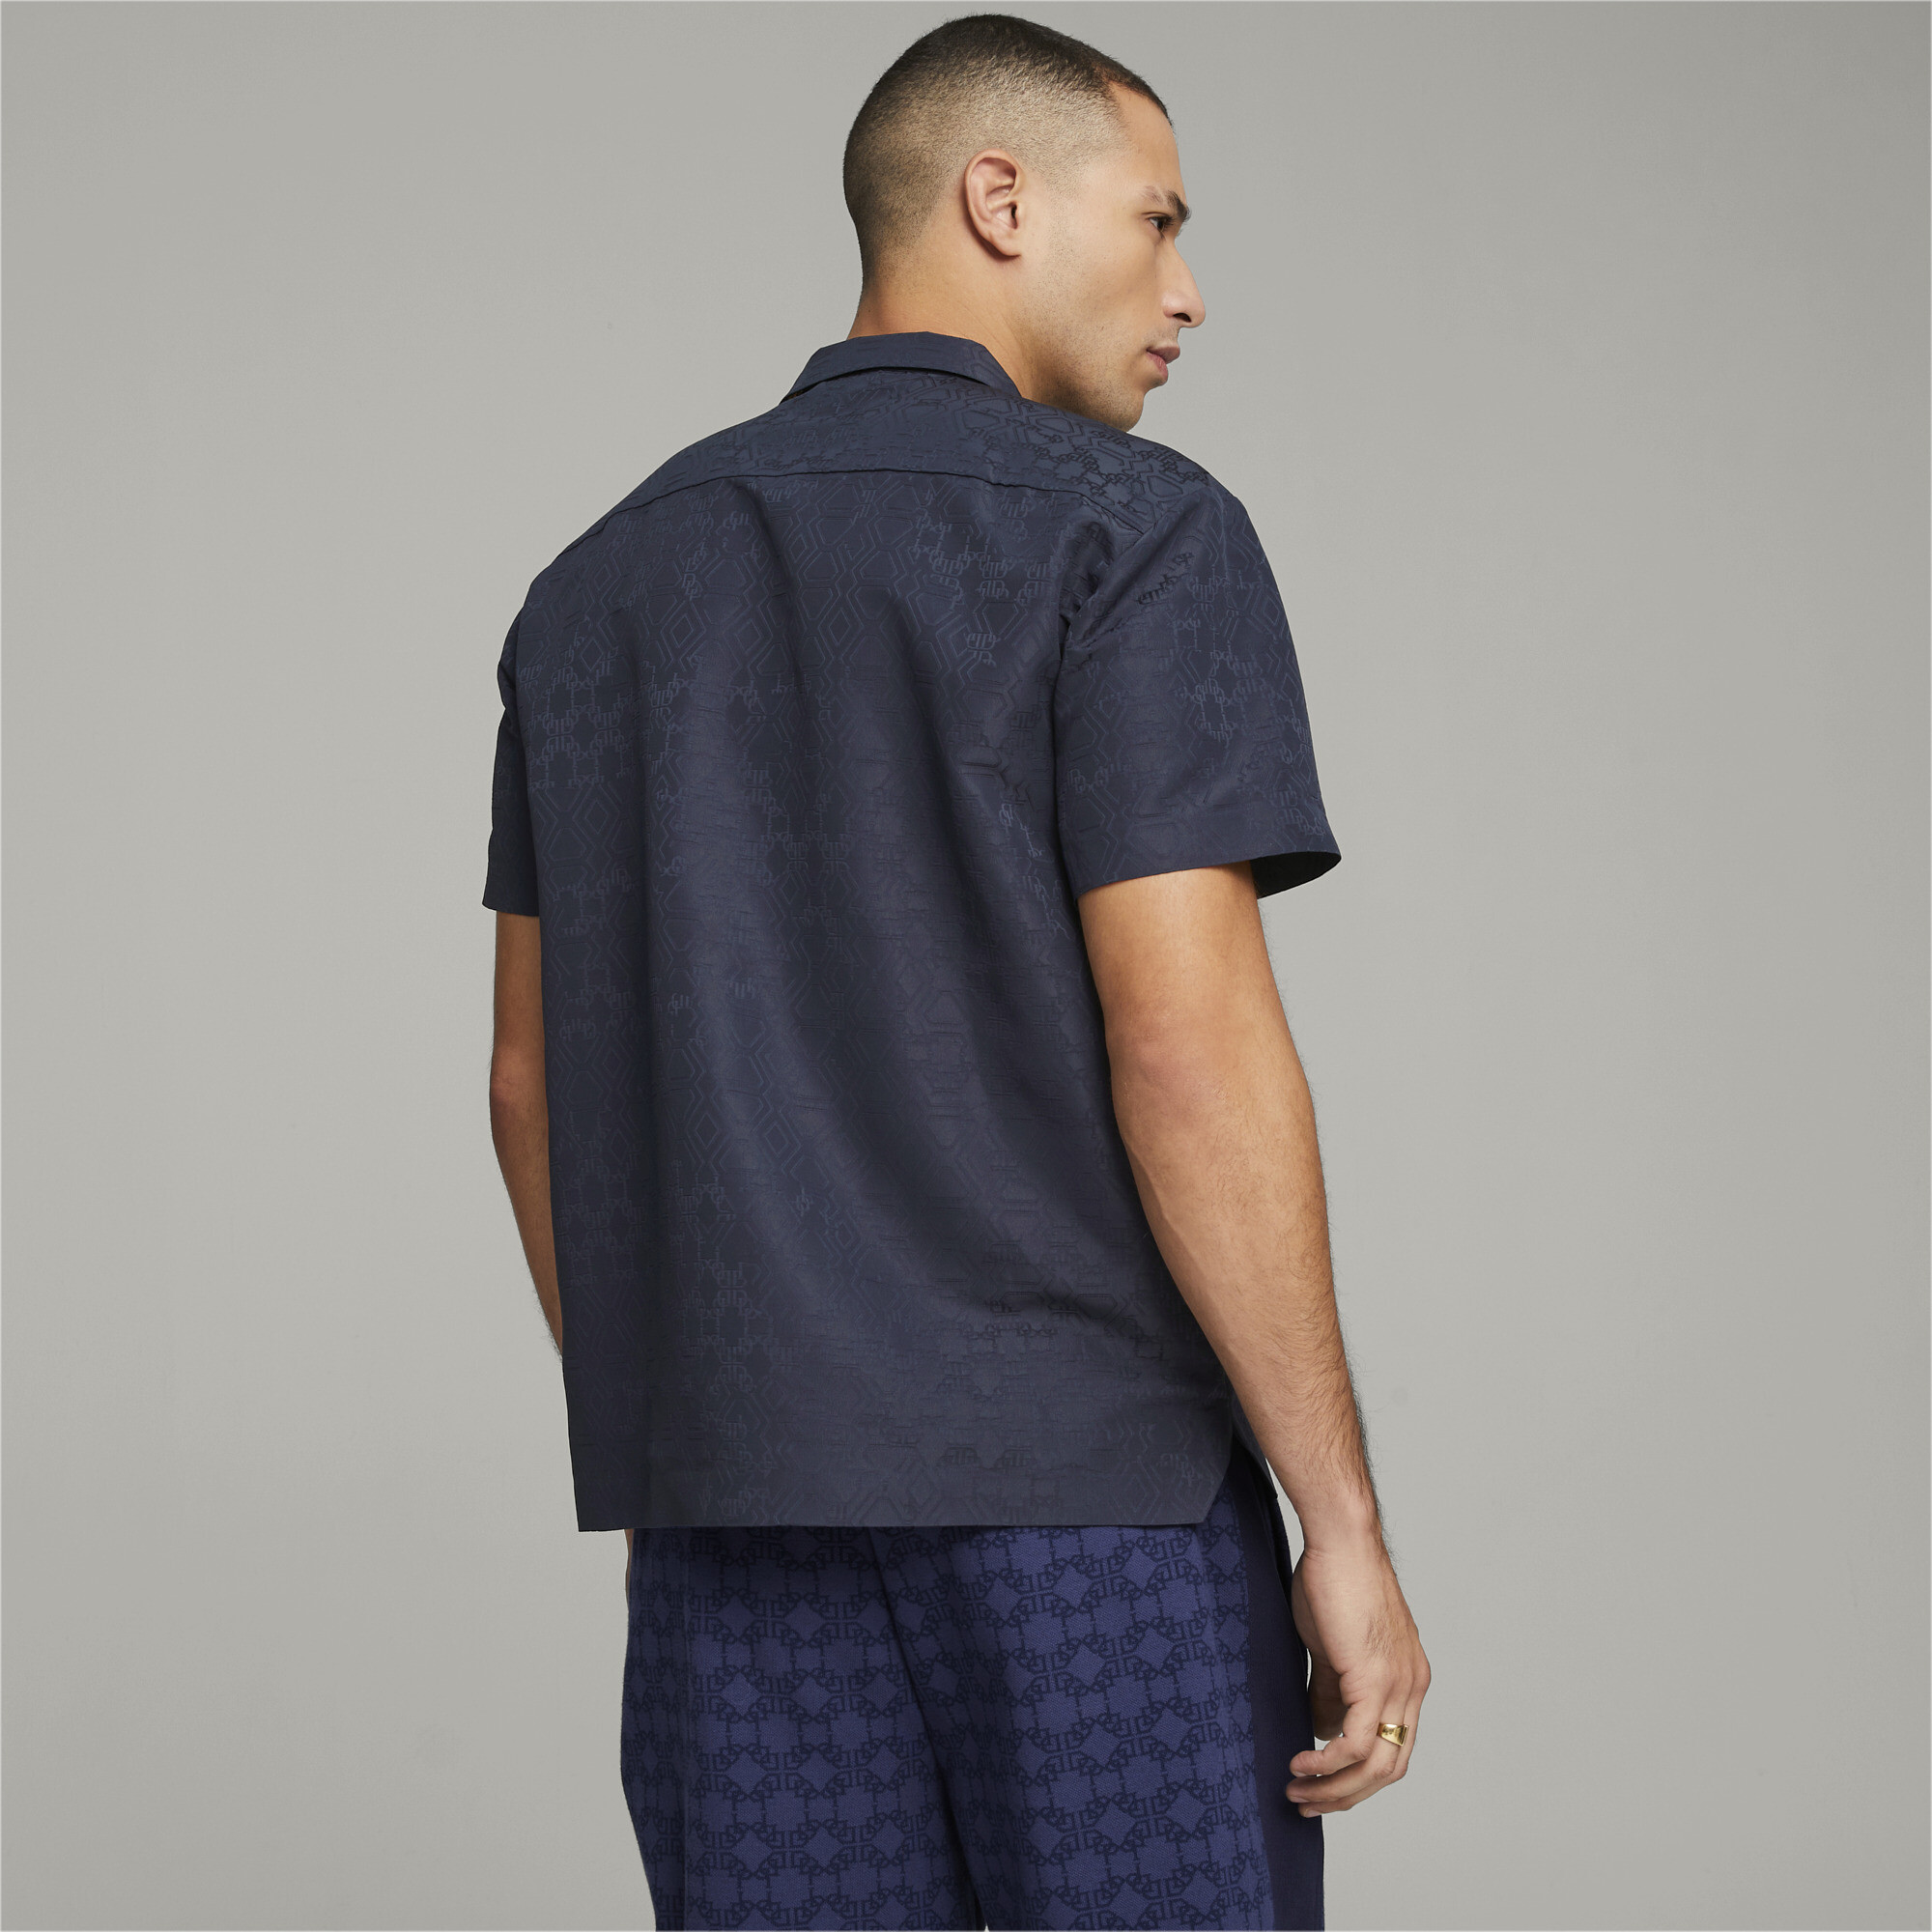 Men's Puma X DAPPER DAN's Shirt, Blue, Size L, Clothing